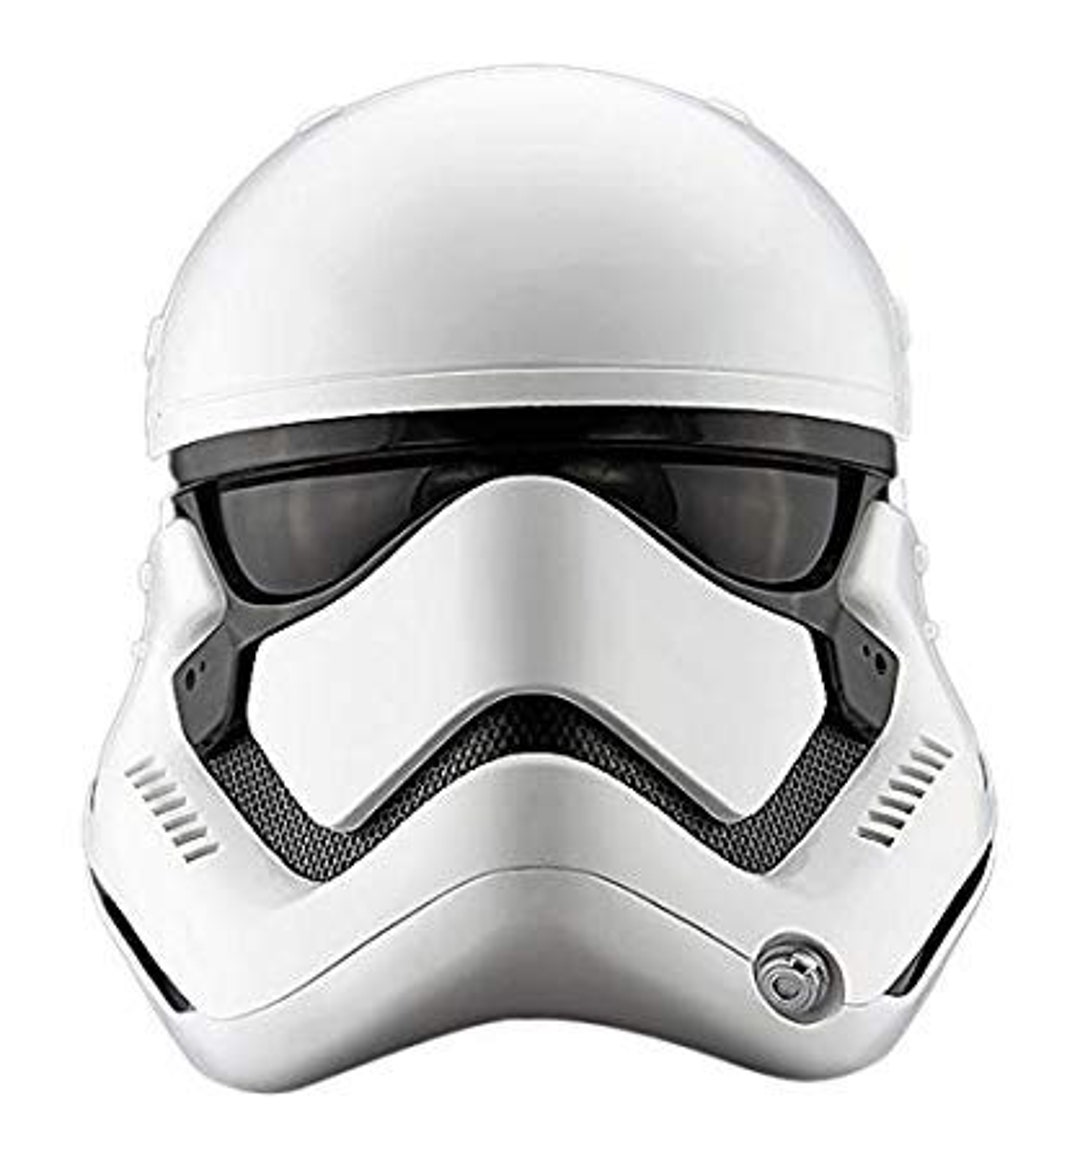 Mentalmente internacional Puede soportar First Order Stormtrooper Helmet - Etsy